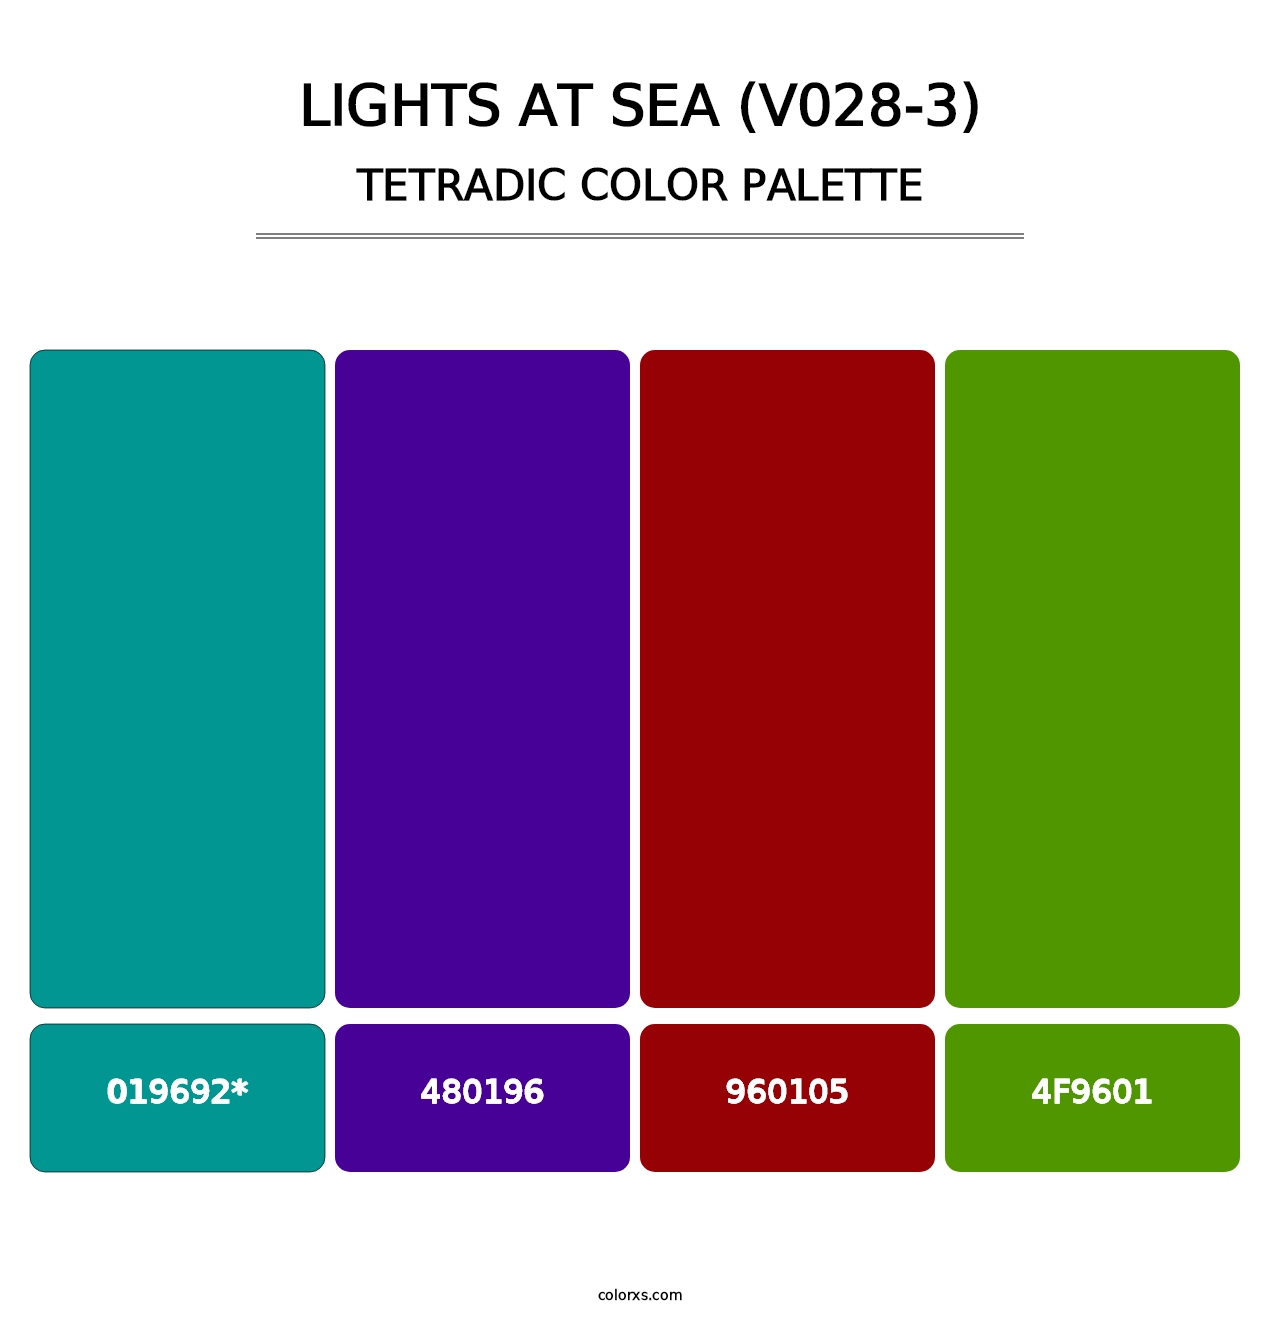 Lights at Sea (V028-3) - Tetradic Color Palette